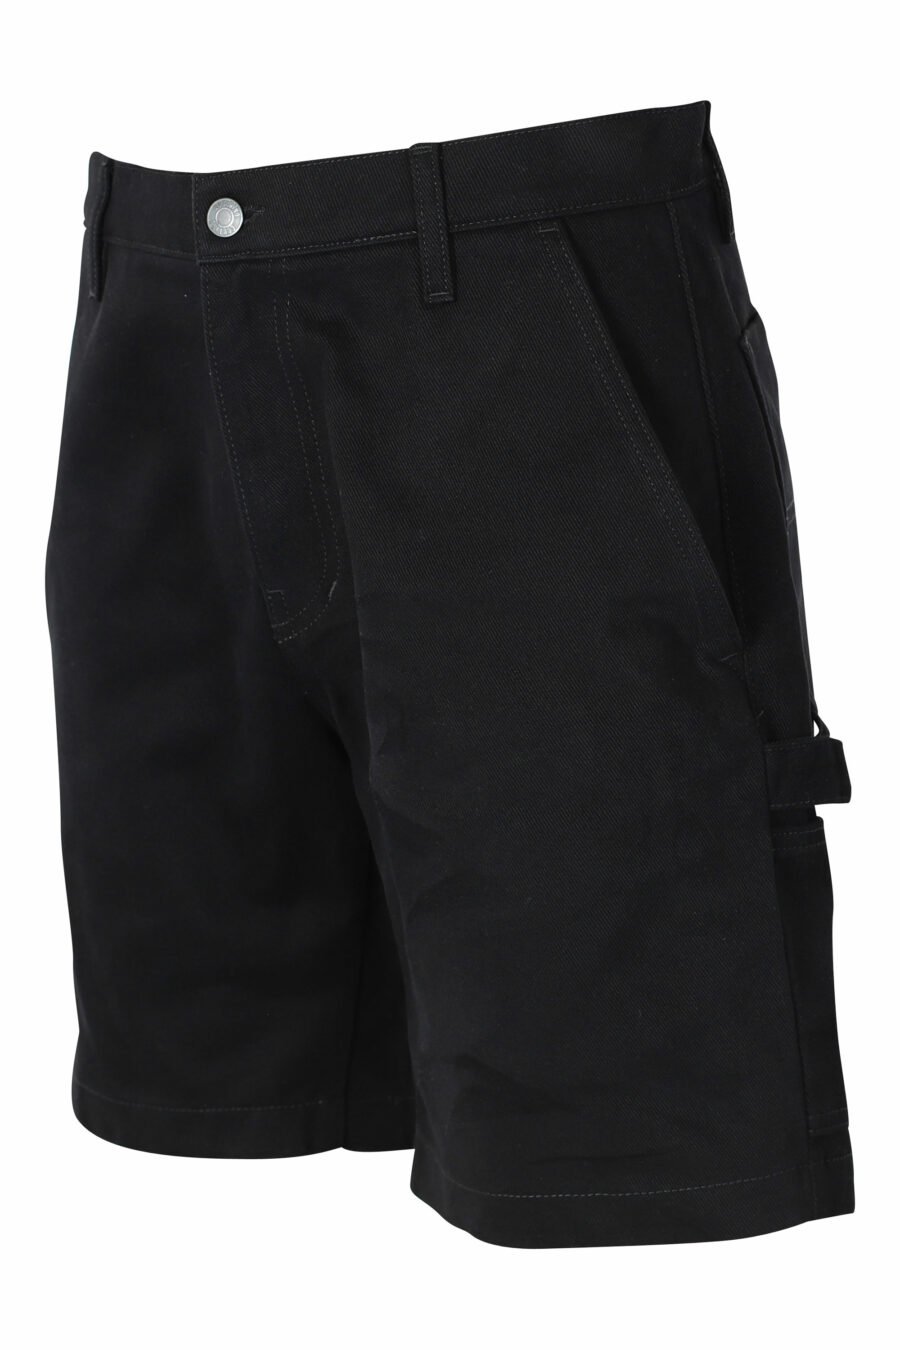 Moschino - Pantalón vaquero corto negro con bolsillos laterales